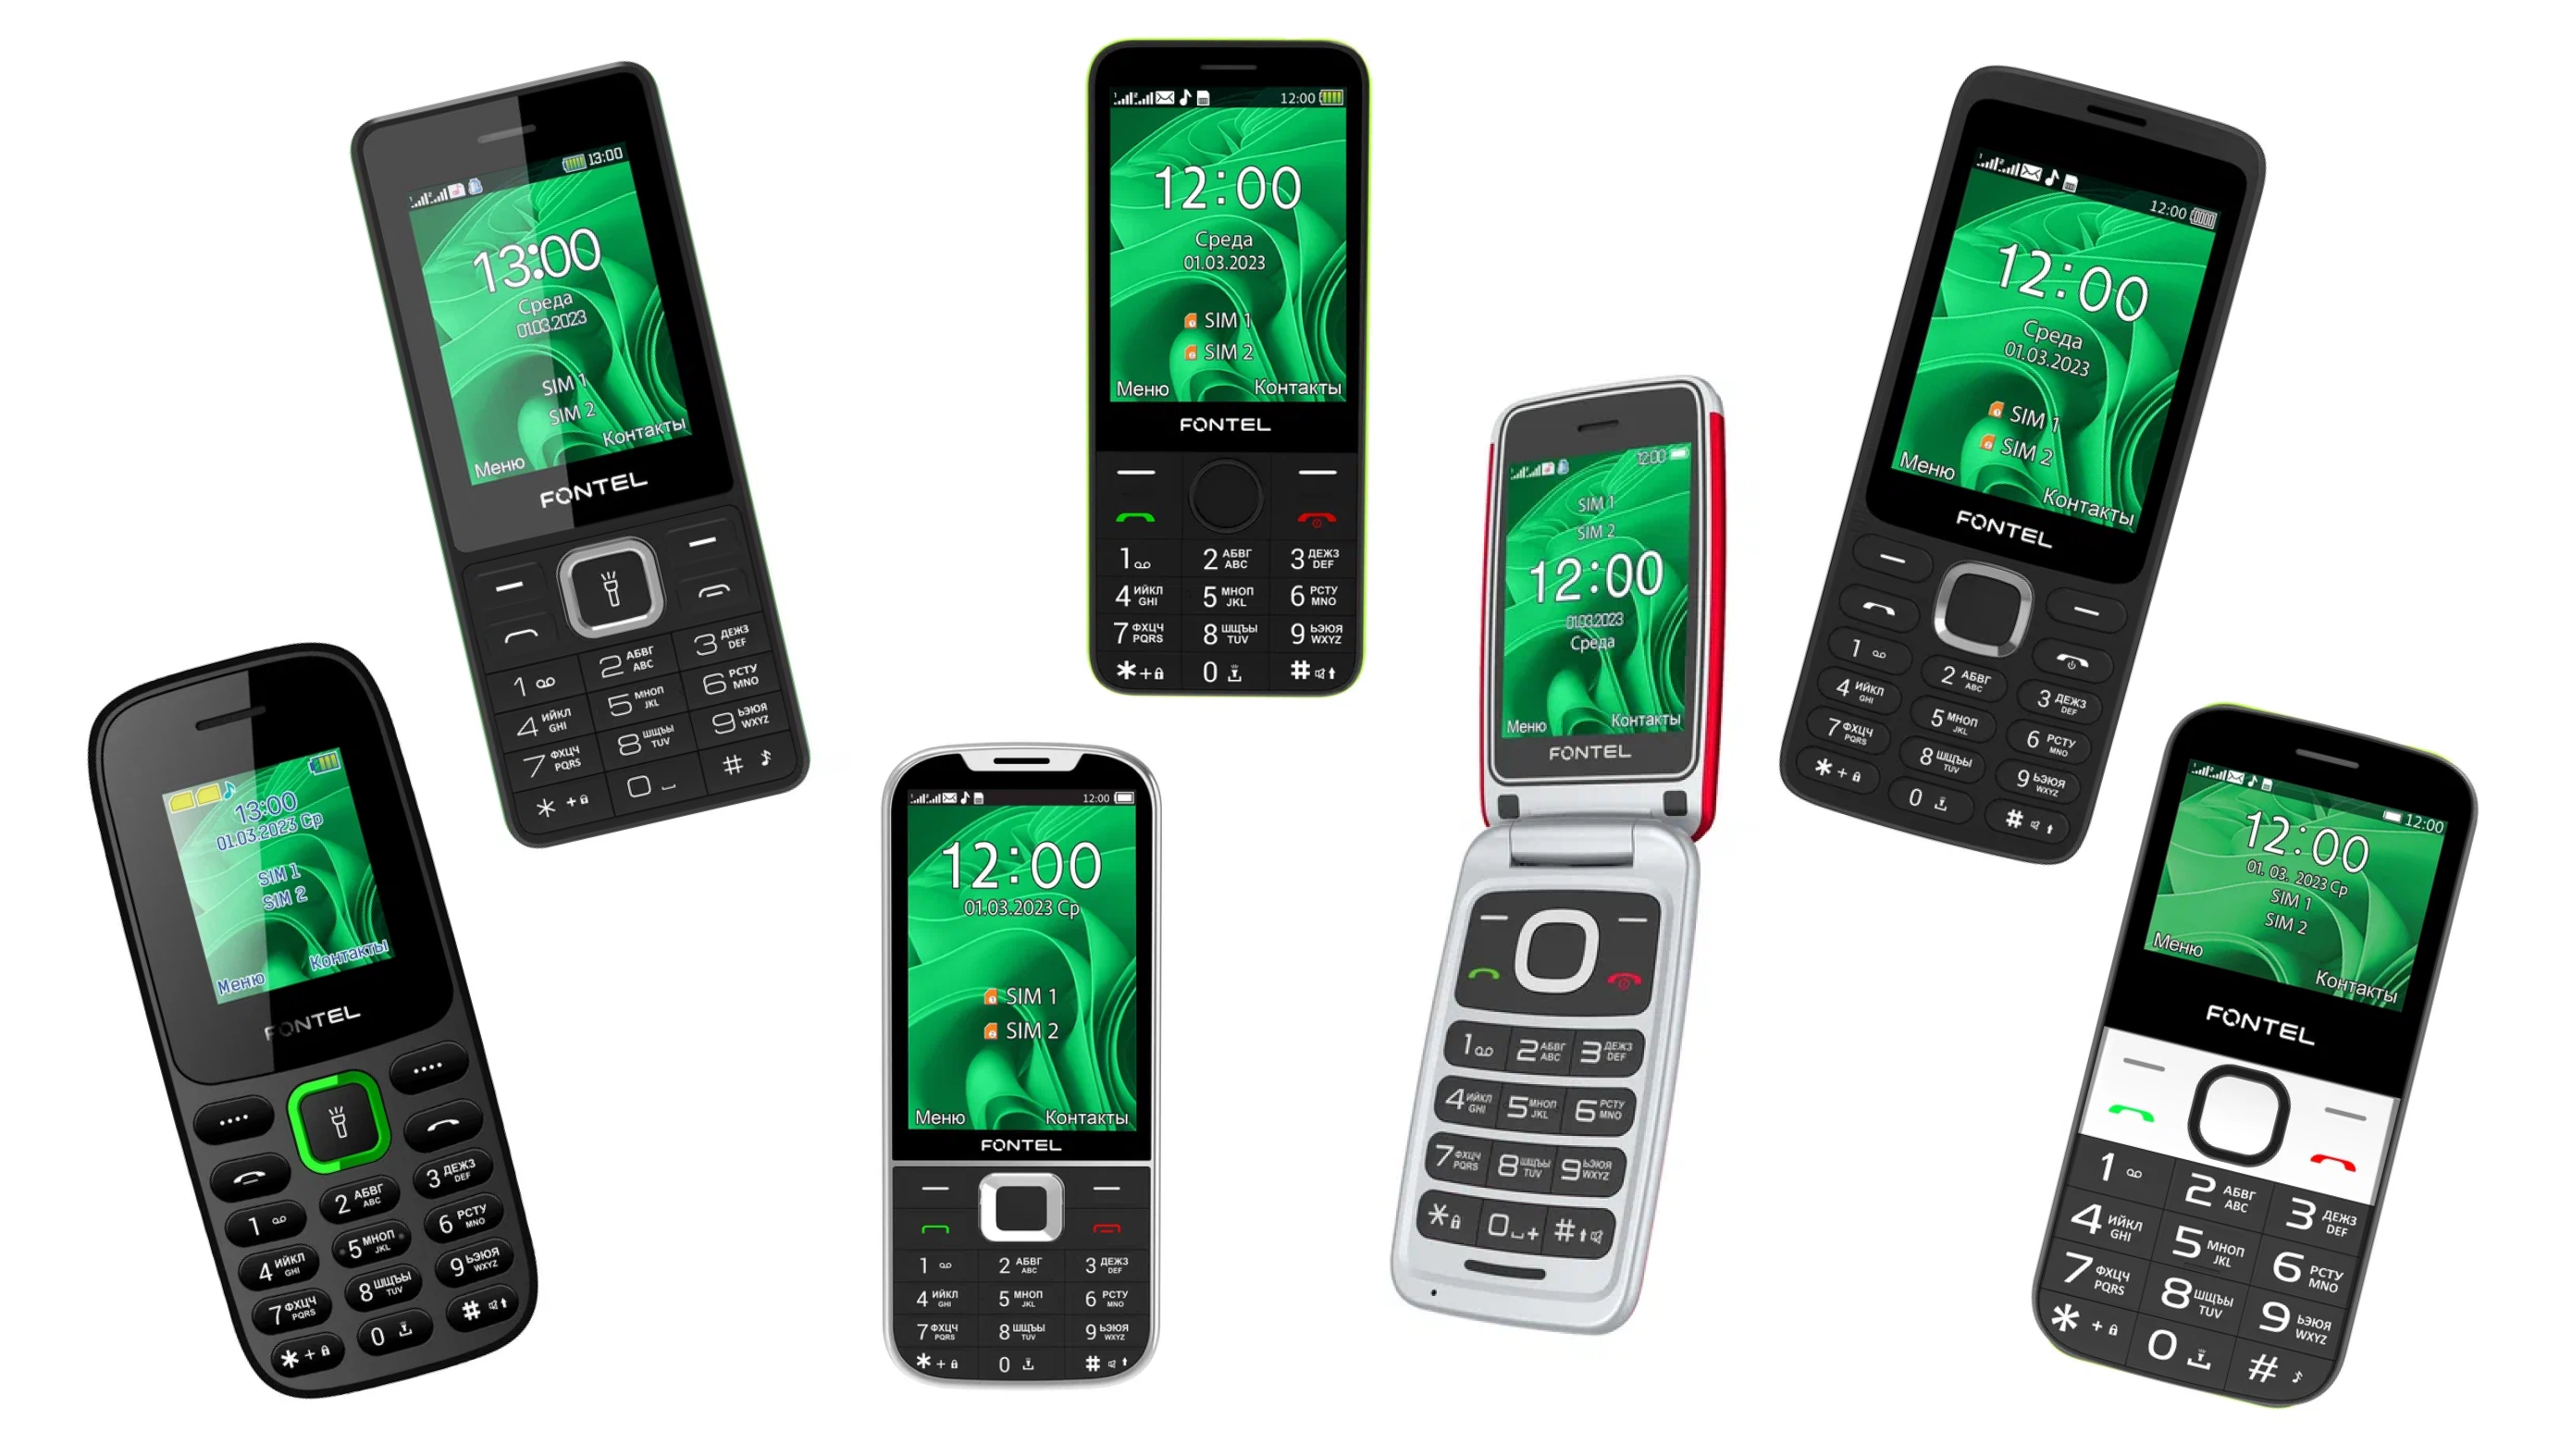 фото: МегаФон начинает продажи шести новых моделей телефонов под собственной торговой маркой